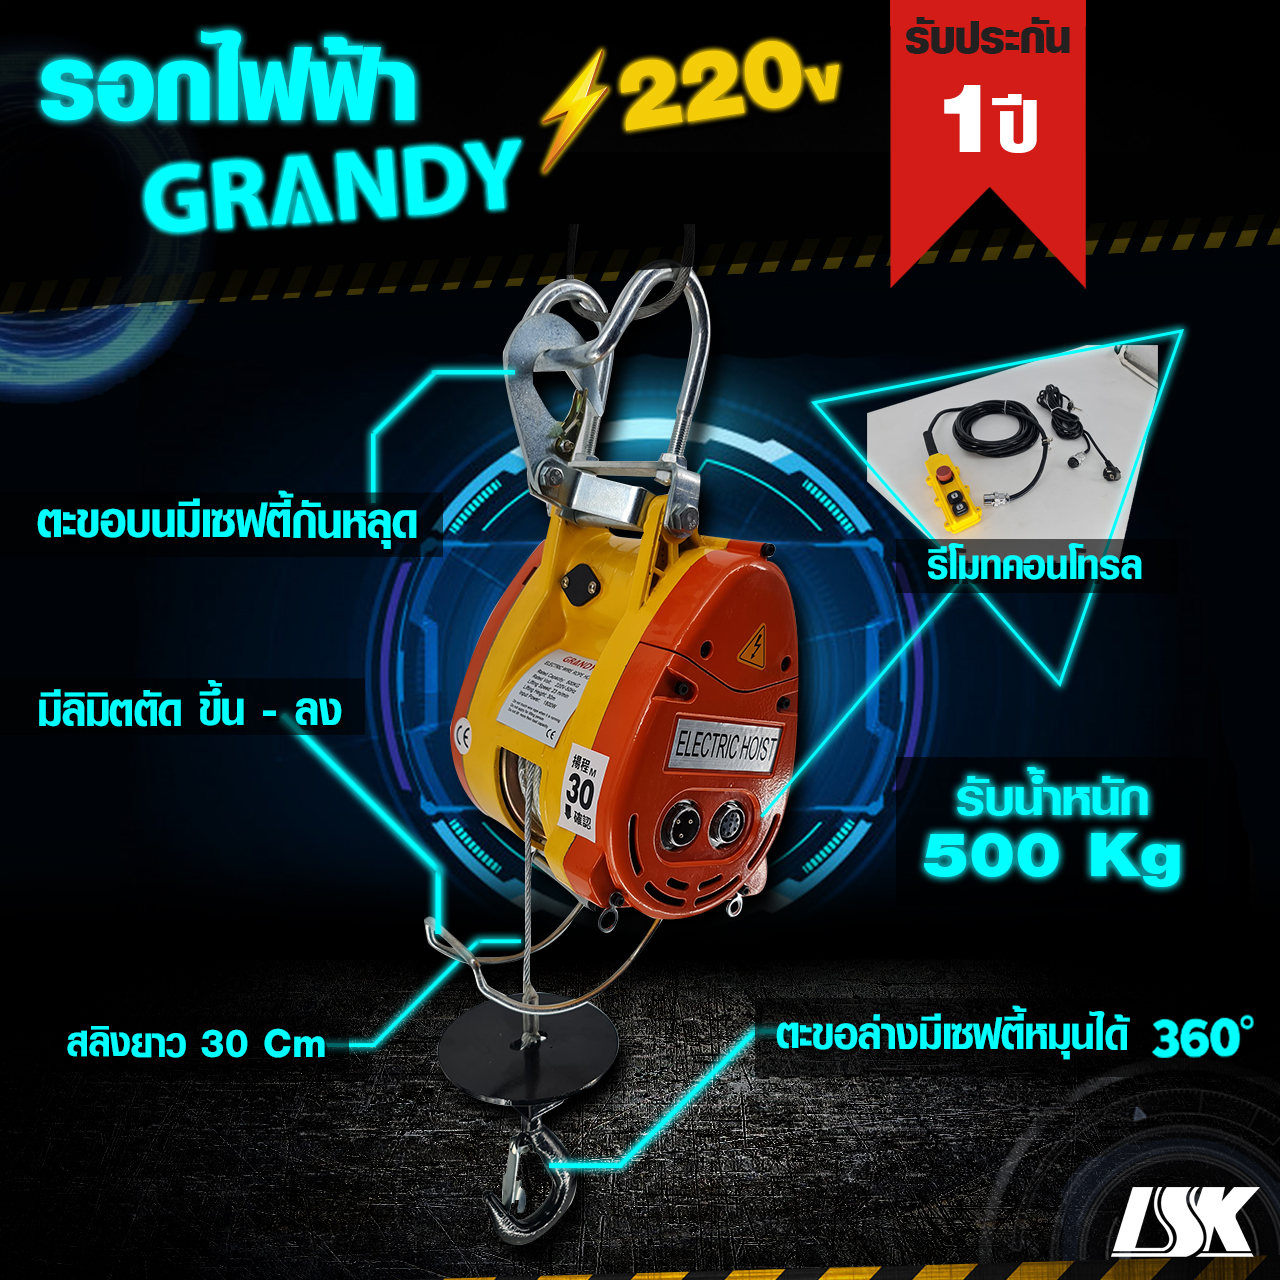 รอกสลิงไฟฟ้า Grandy รับน้ำหนัก 230-500 KG ใช้ไฟ 220 V